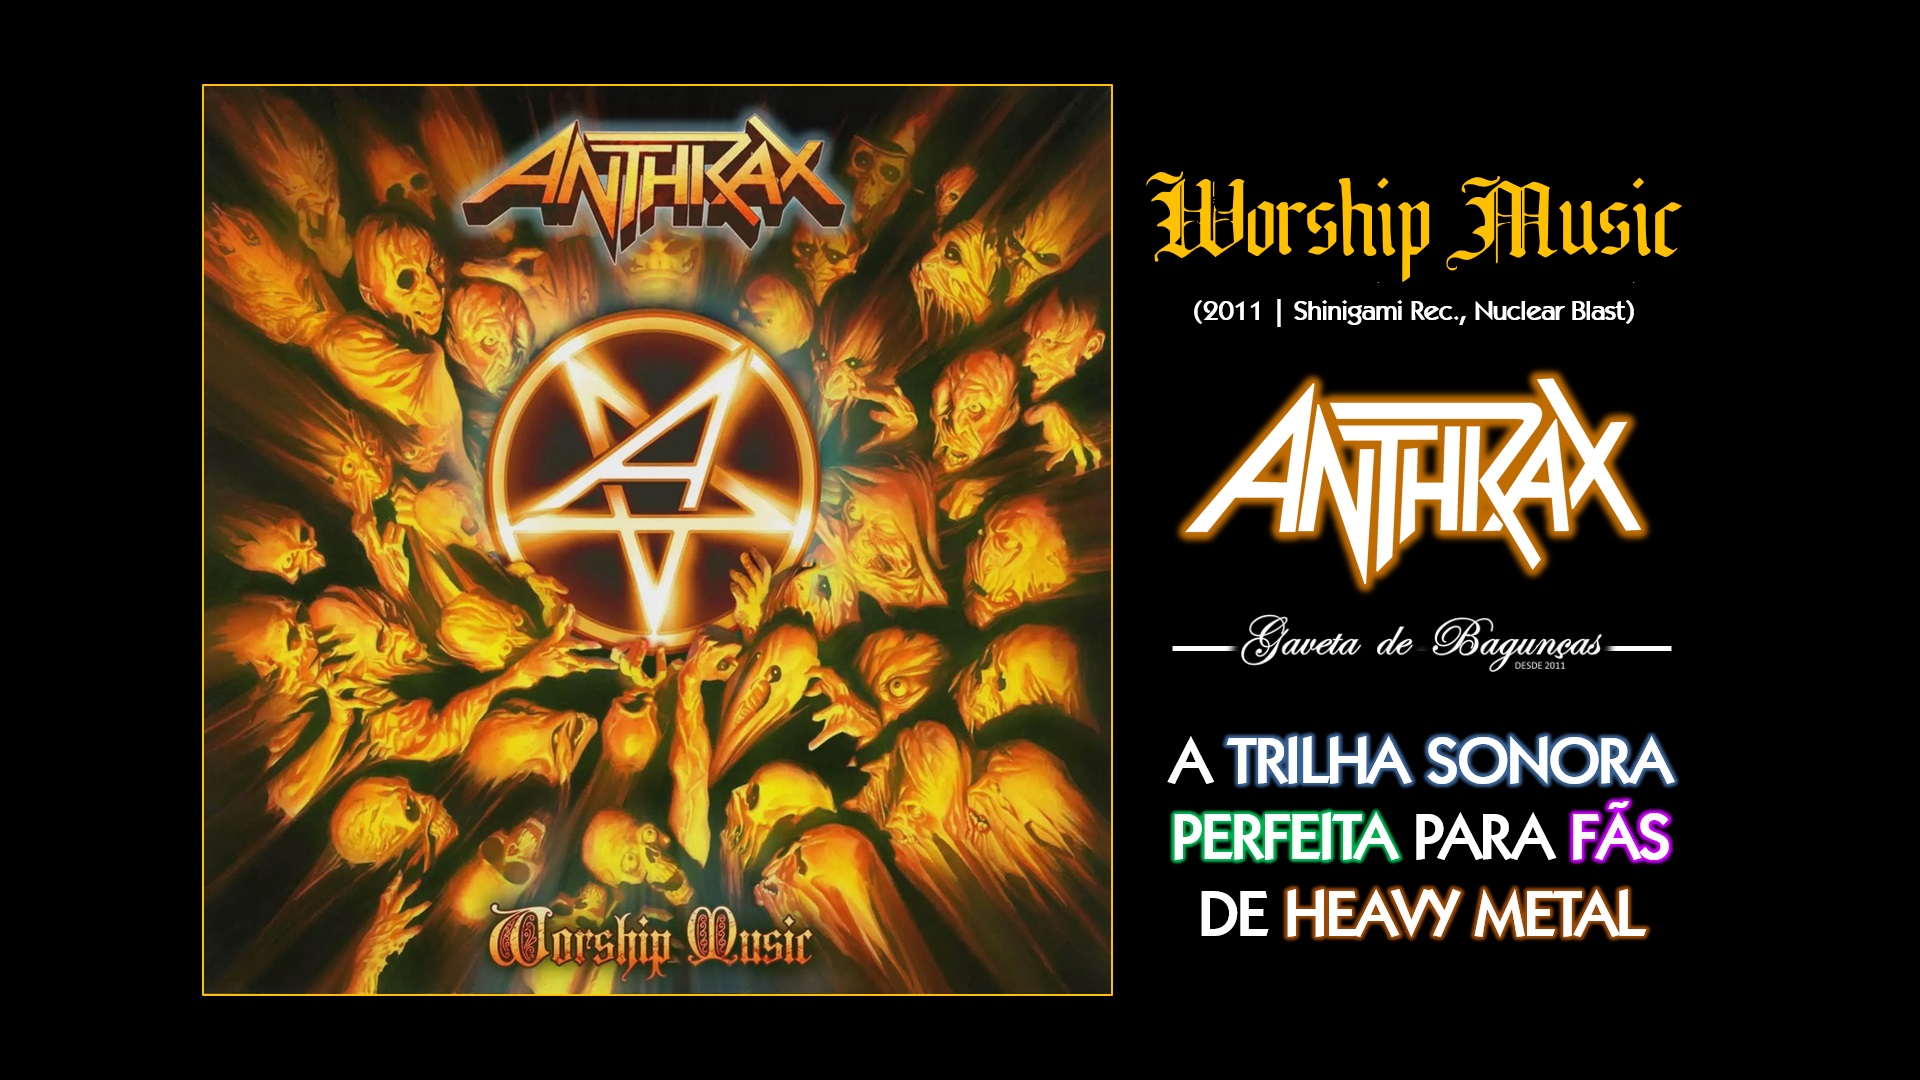 "Worship Music", álbum do Anthrax, é de audição obrigatória para qualquer fã de heavy metal. Este álbum é uma mistura perfeita de riffs pesados, vocais poderosos e bateria intensa.